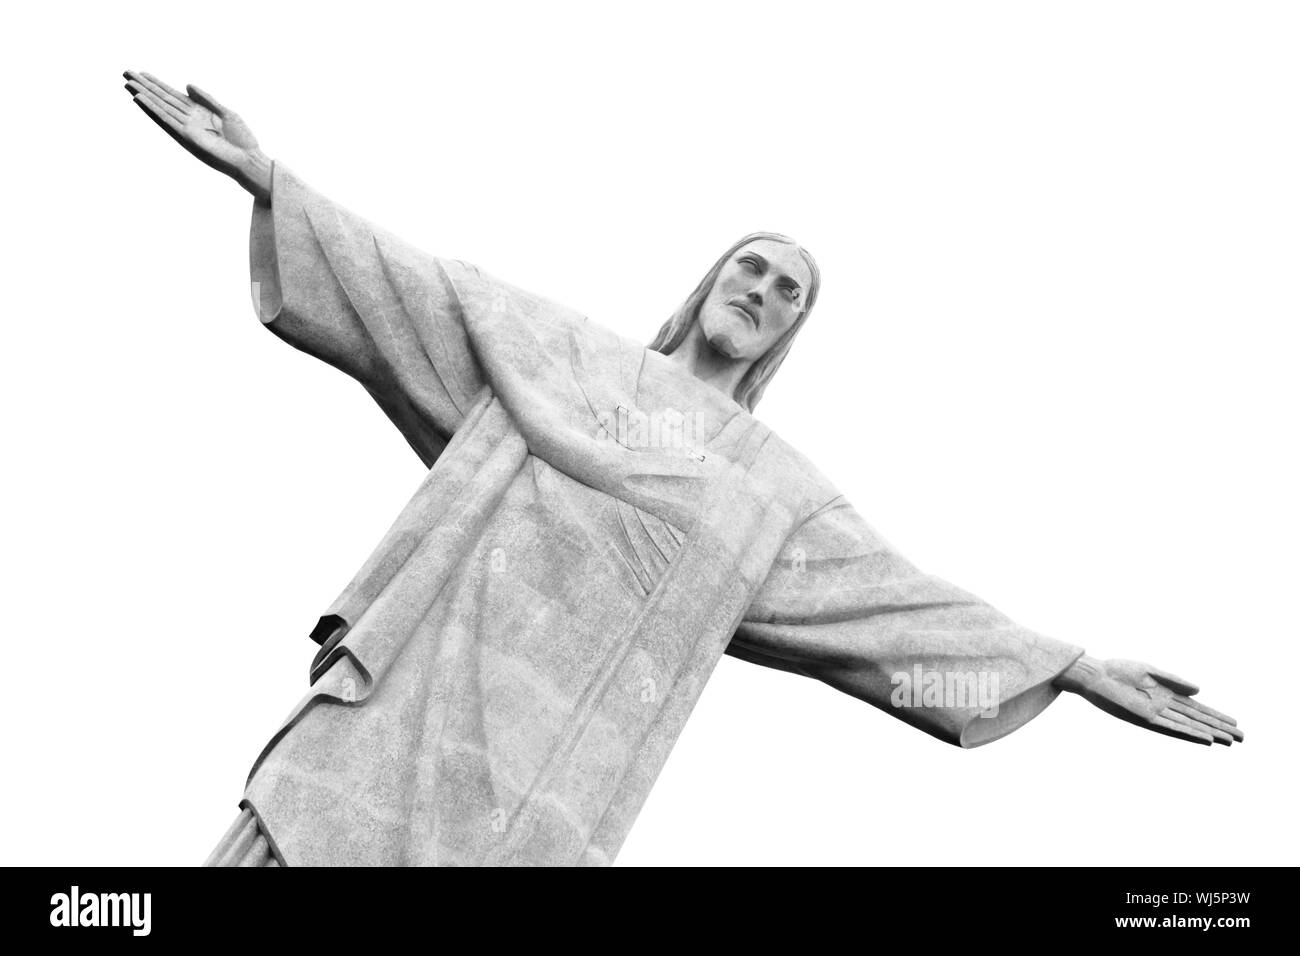 Christus der Erlöser Statue, Rio De Janeiro, Brasilien. Schwarz und weiß. Stockfoto